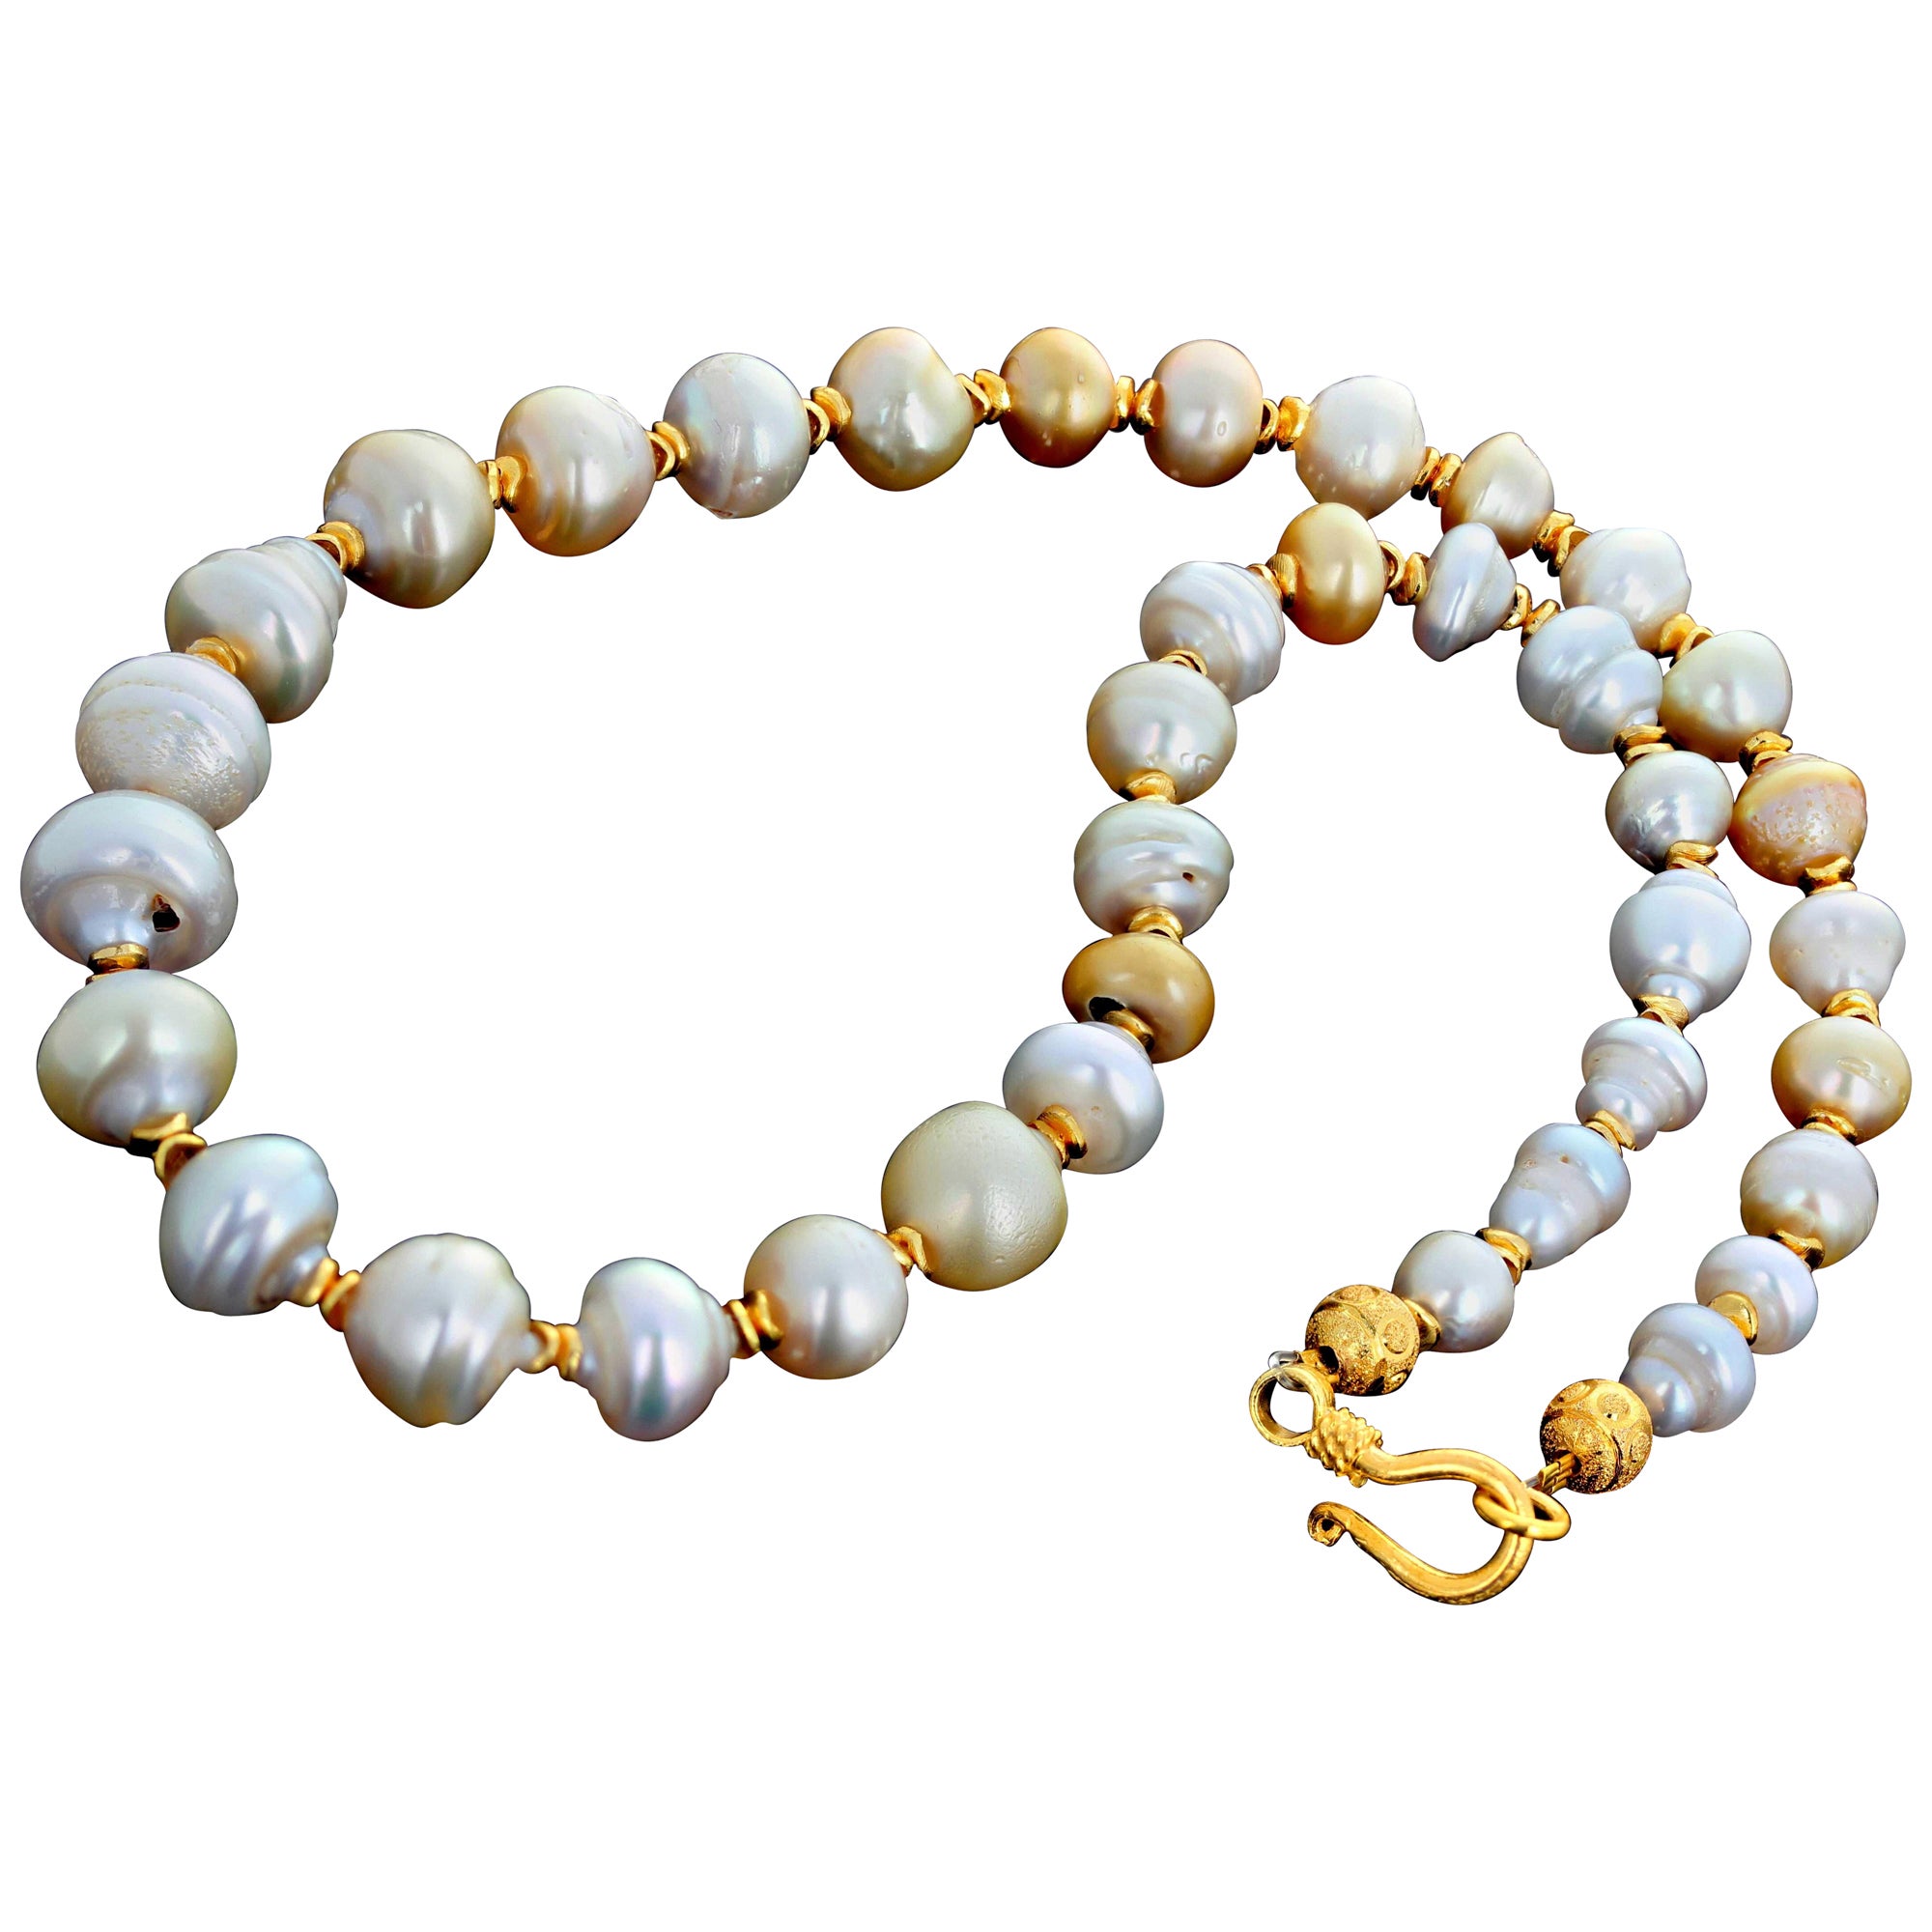 Absolut traumhaft schöne natürliche Tahiti-Perlen  diese wunderschöne Perlenkette zu kreieren.  Die größte Perle ist 14,8 mm groß.  Die vergoldeten Abstandshalter verstärken das Leuchten der leicht unterschiedlichen Farben dieser schönen